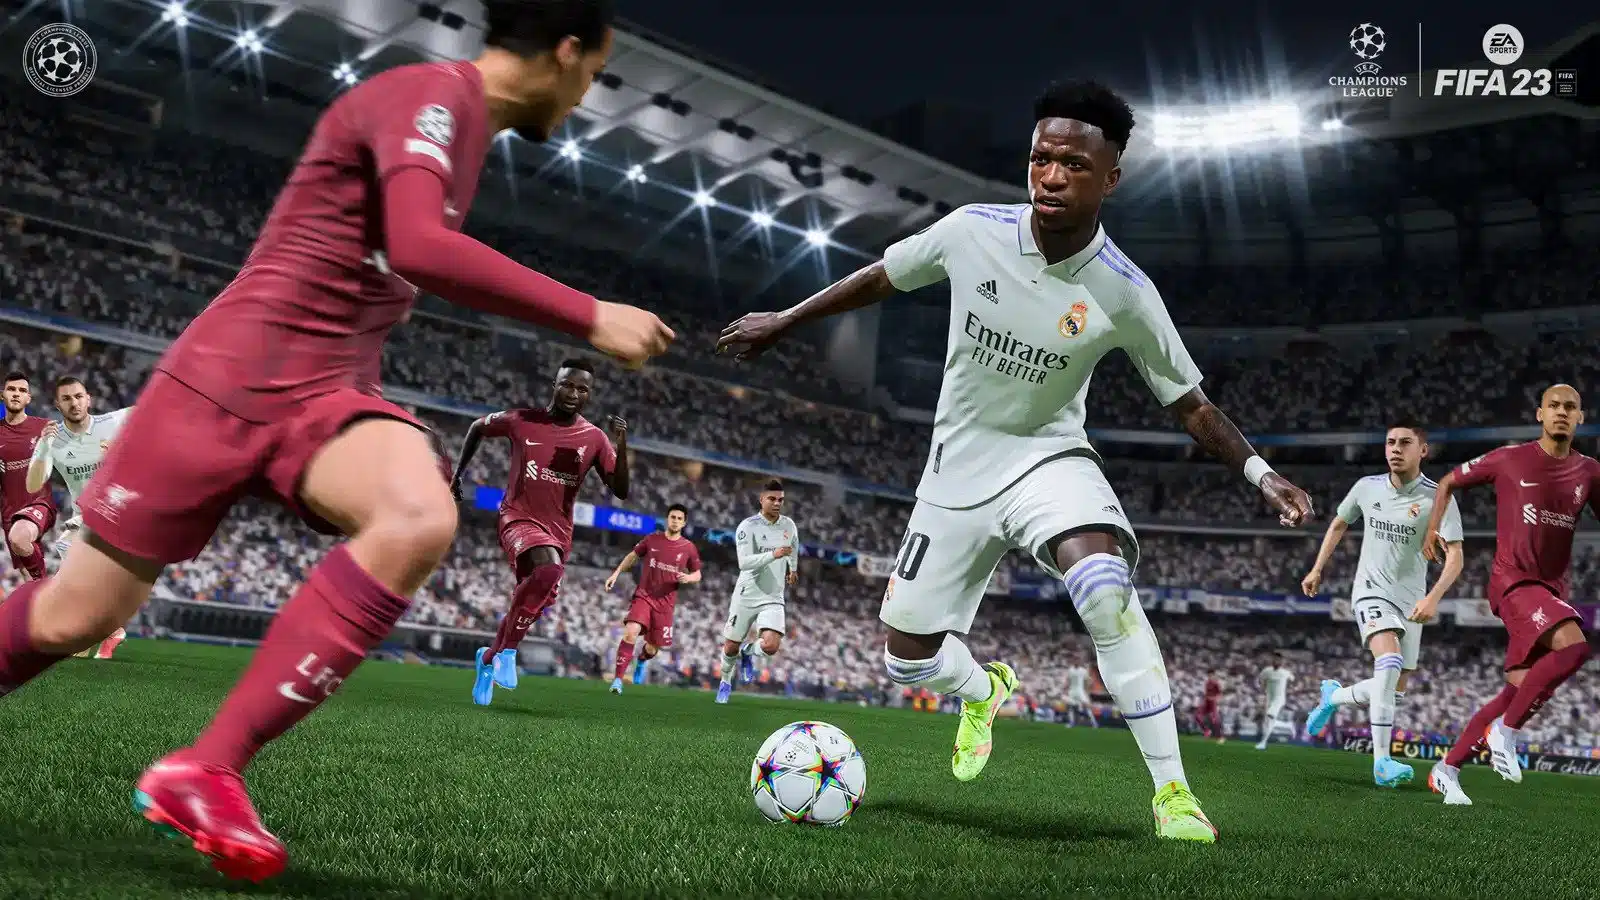 FIFA 23 Update 1.21